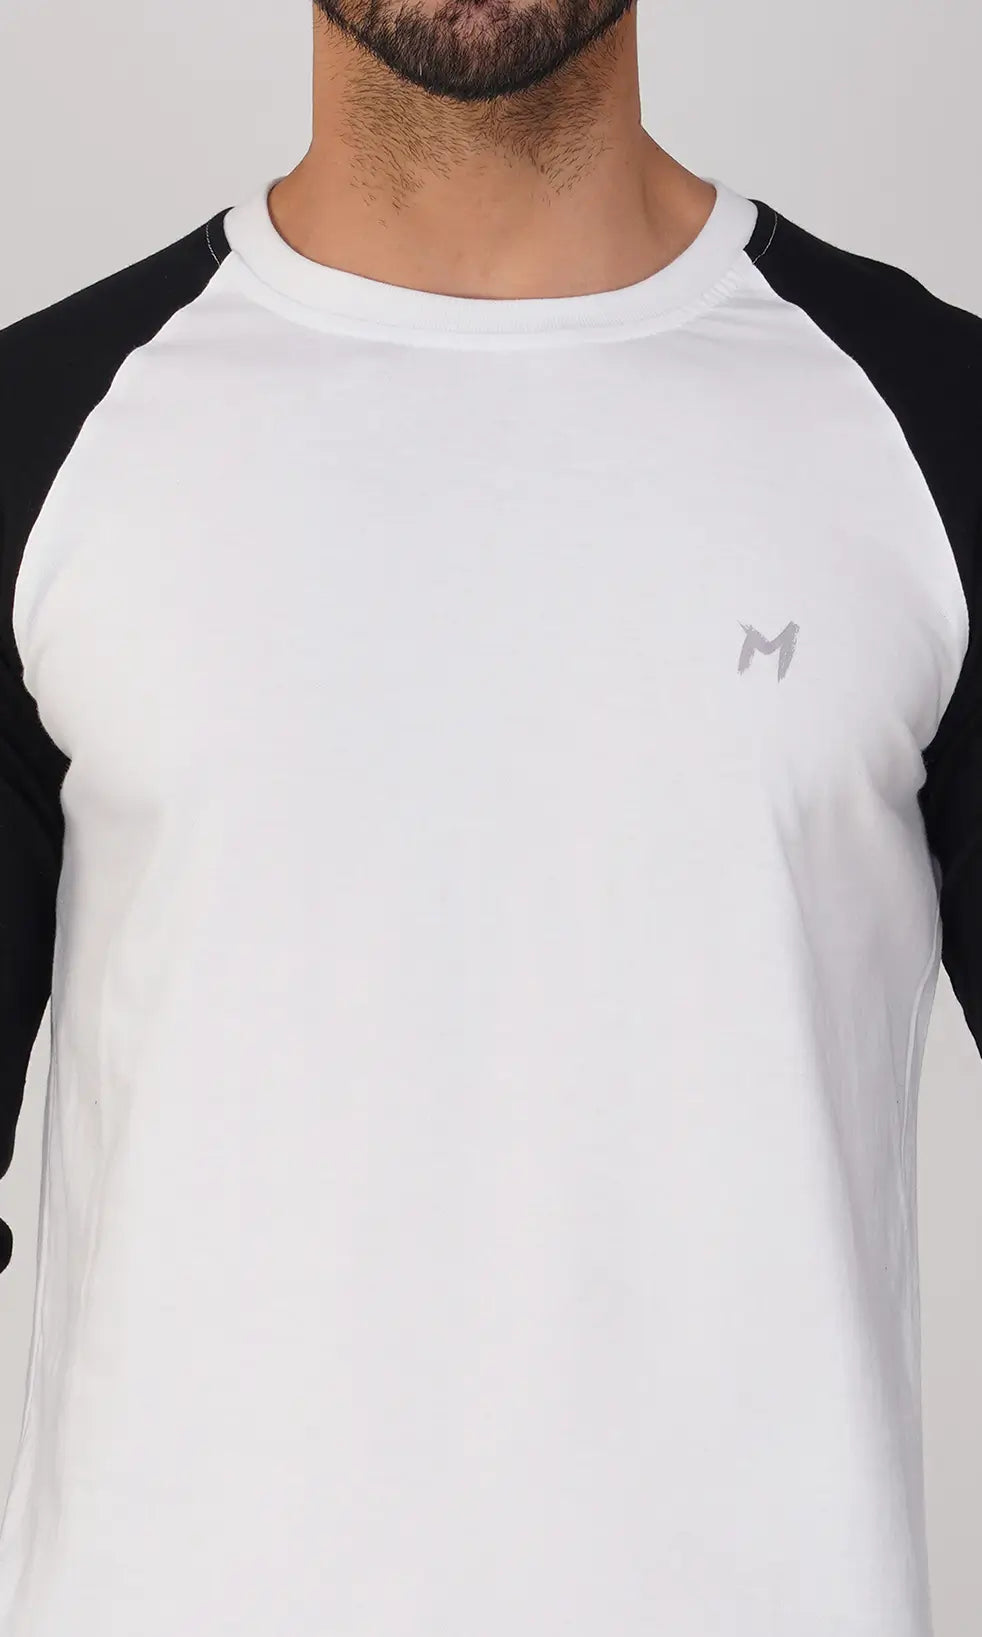 Mebadass Men's Fullsleeve Raglan T-shirt - Black White